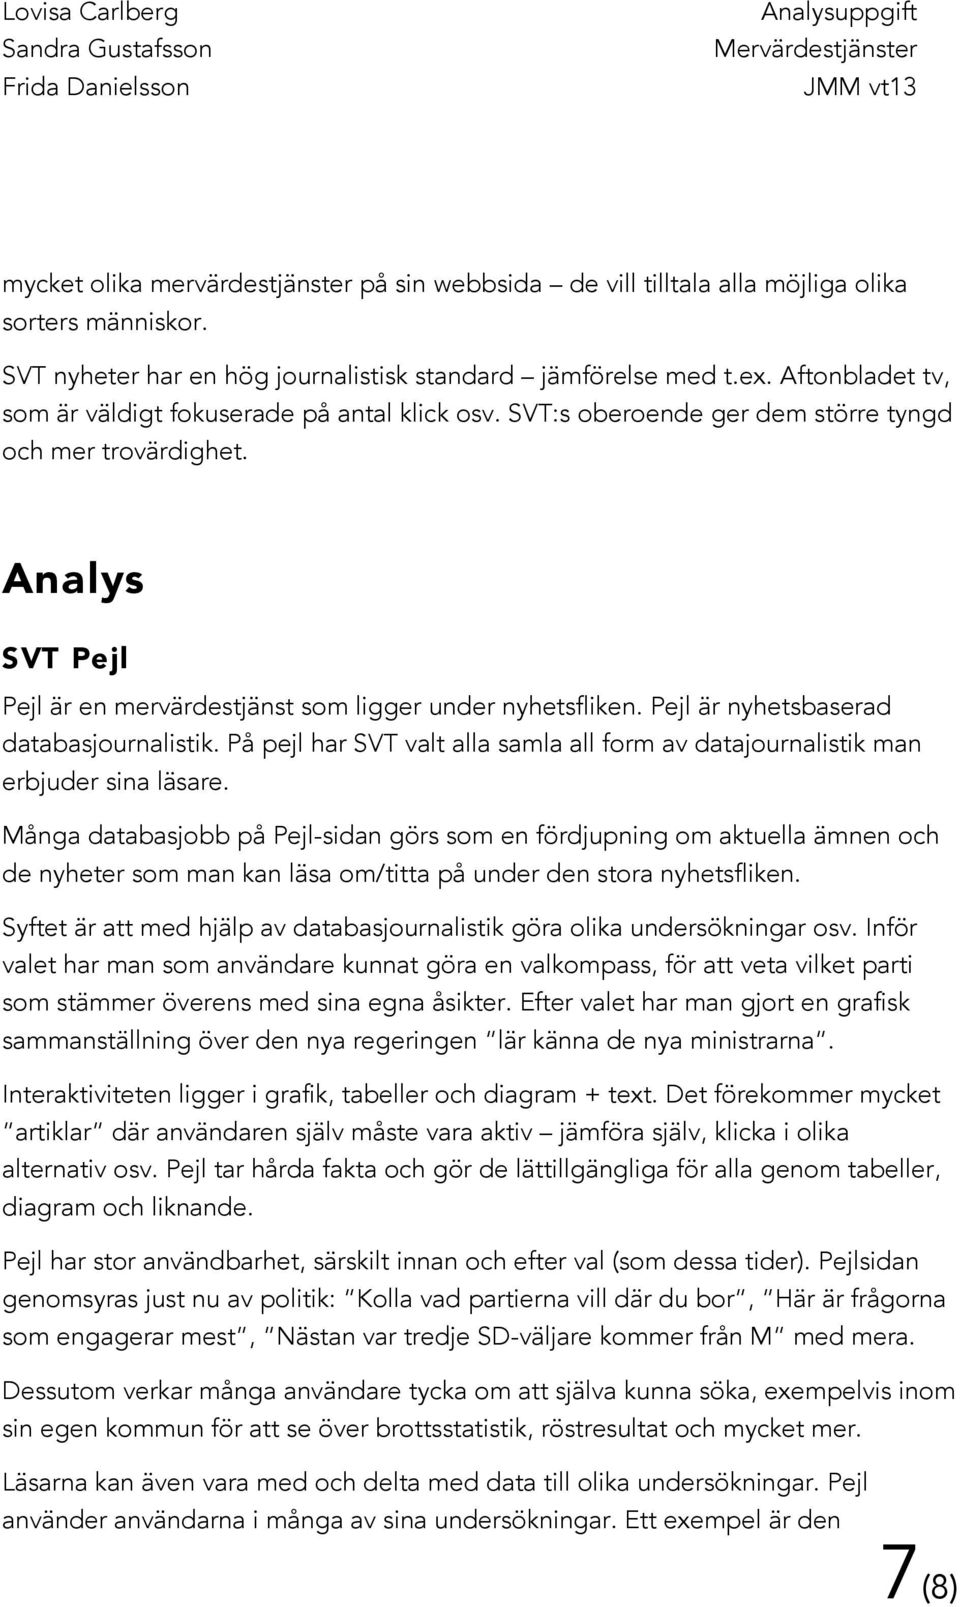 Pejl är nyhetsbaserad databasjournalistik. På pejl har SVT valt alla samla all form av datajournalistik man erbjuder sina läsare.